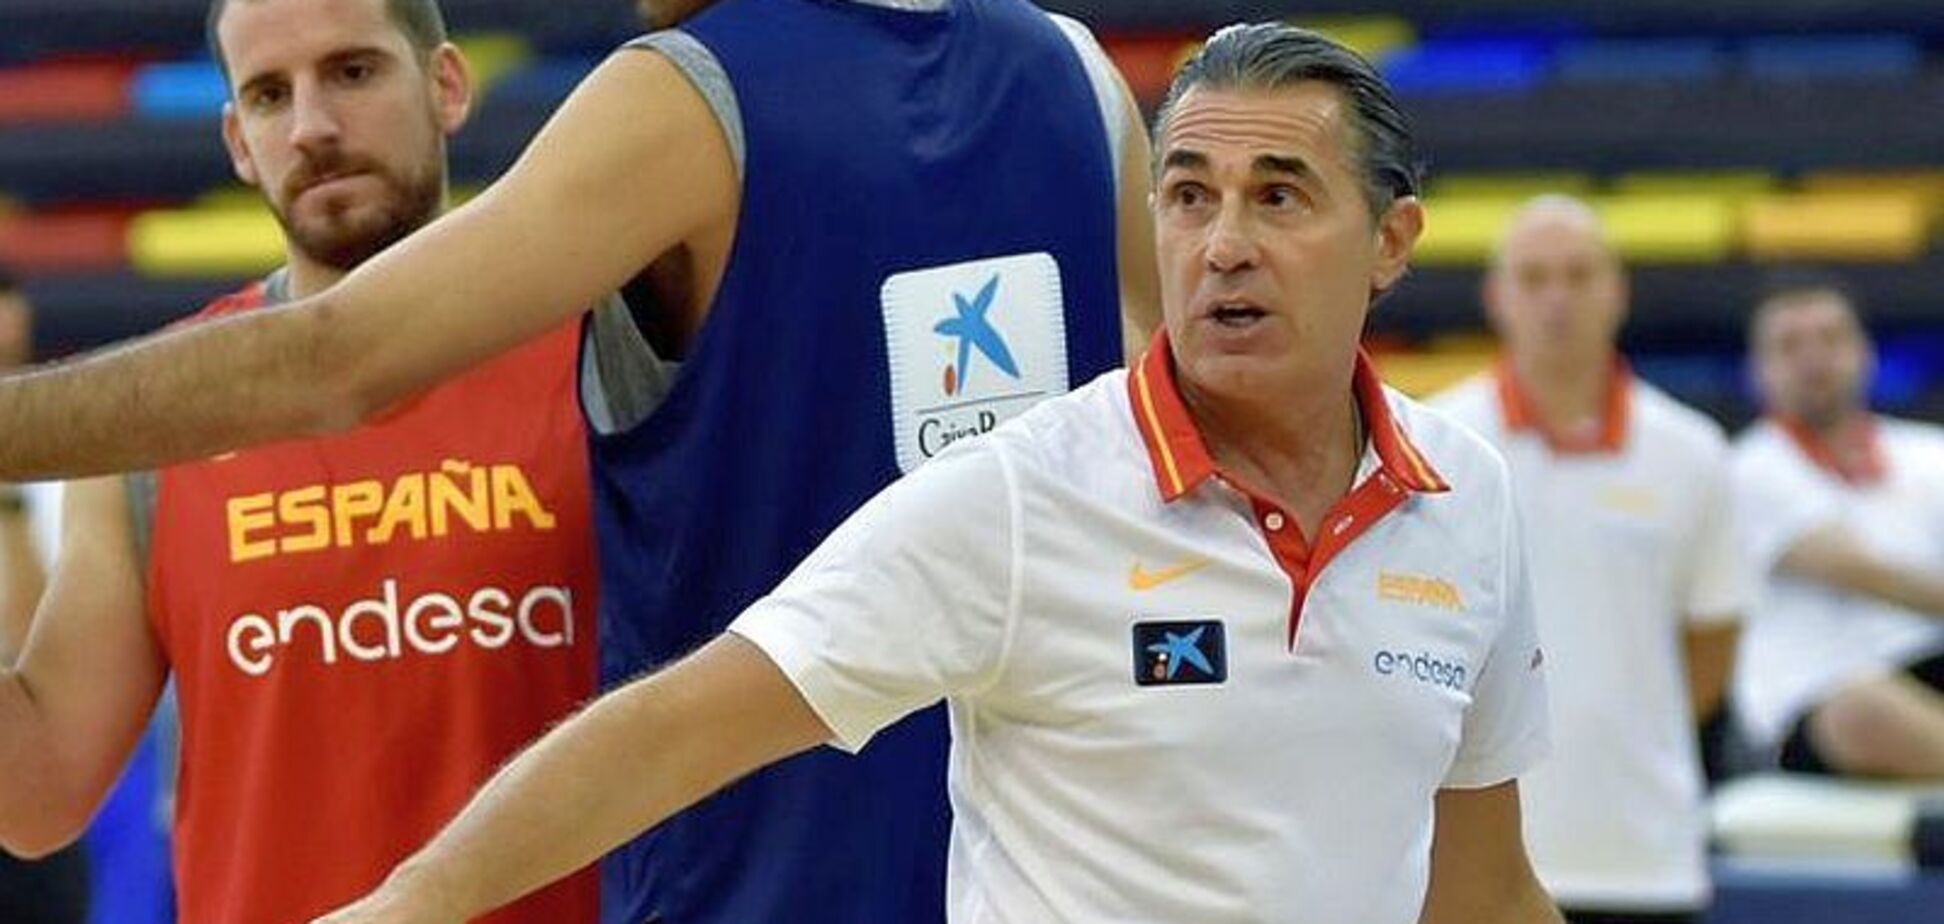 'Чудове поєднання': тренер Іспанії розщедрився на компліменти українським баскетболістам